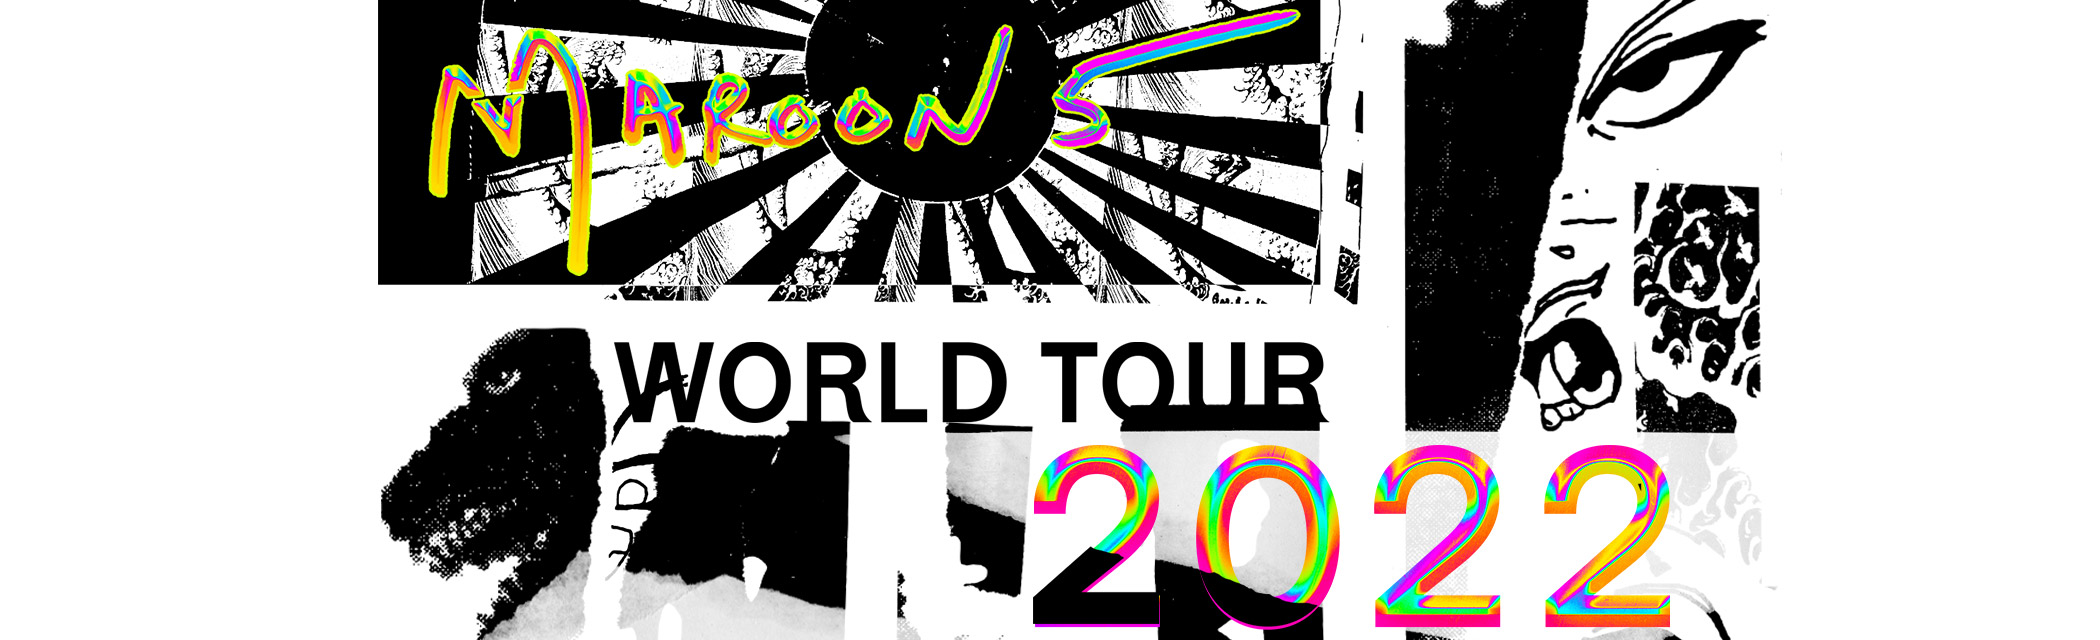 World Tour 2022